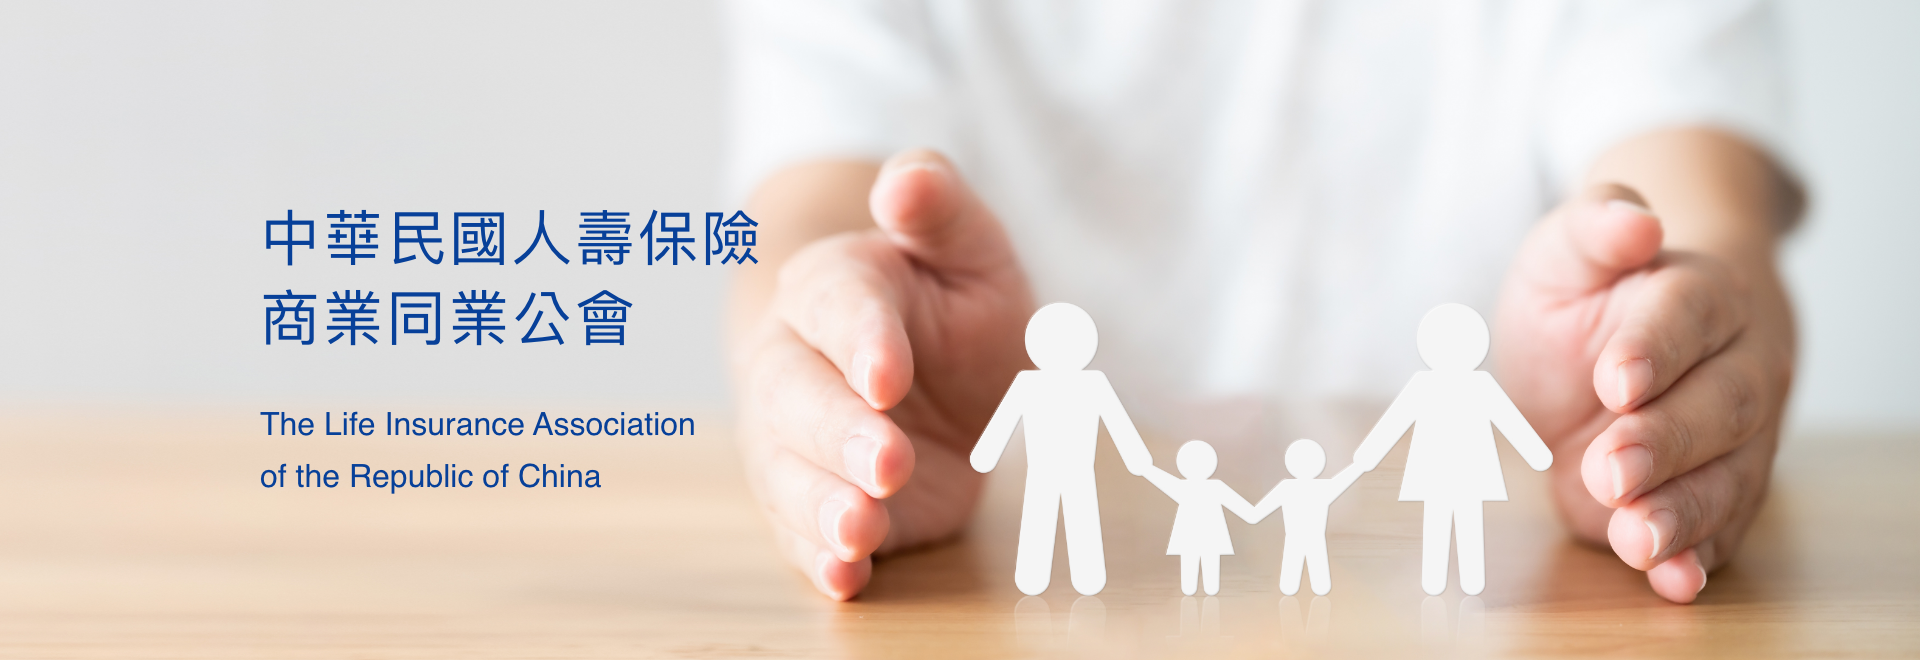 中華民國人壽保險商業同業公會Banner